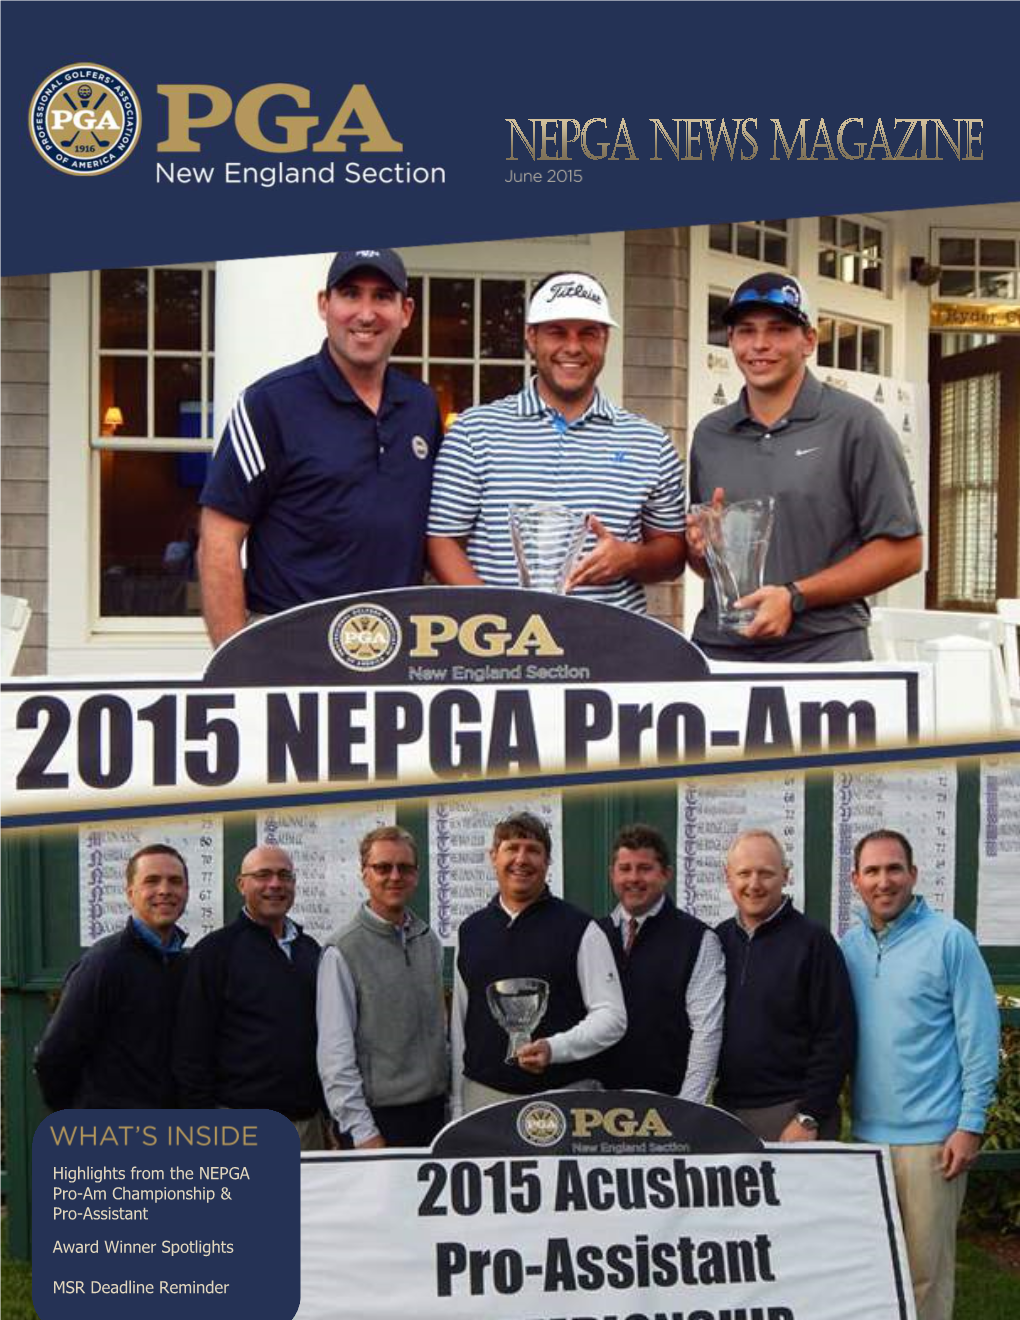 Highlights from the NEPGA Pro-Am Championship & Pro-Assistant Award Winner Spotlights MSR Deadline Reminder